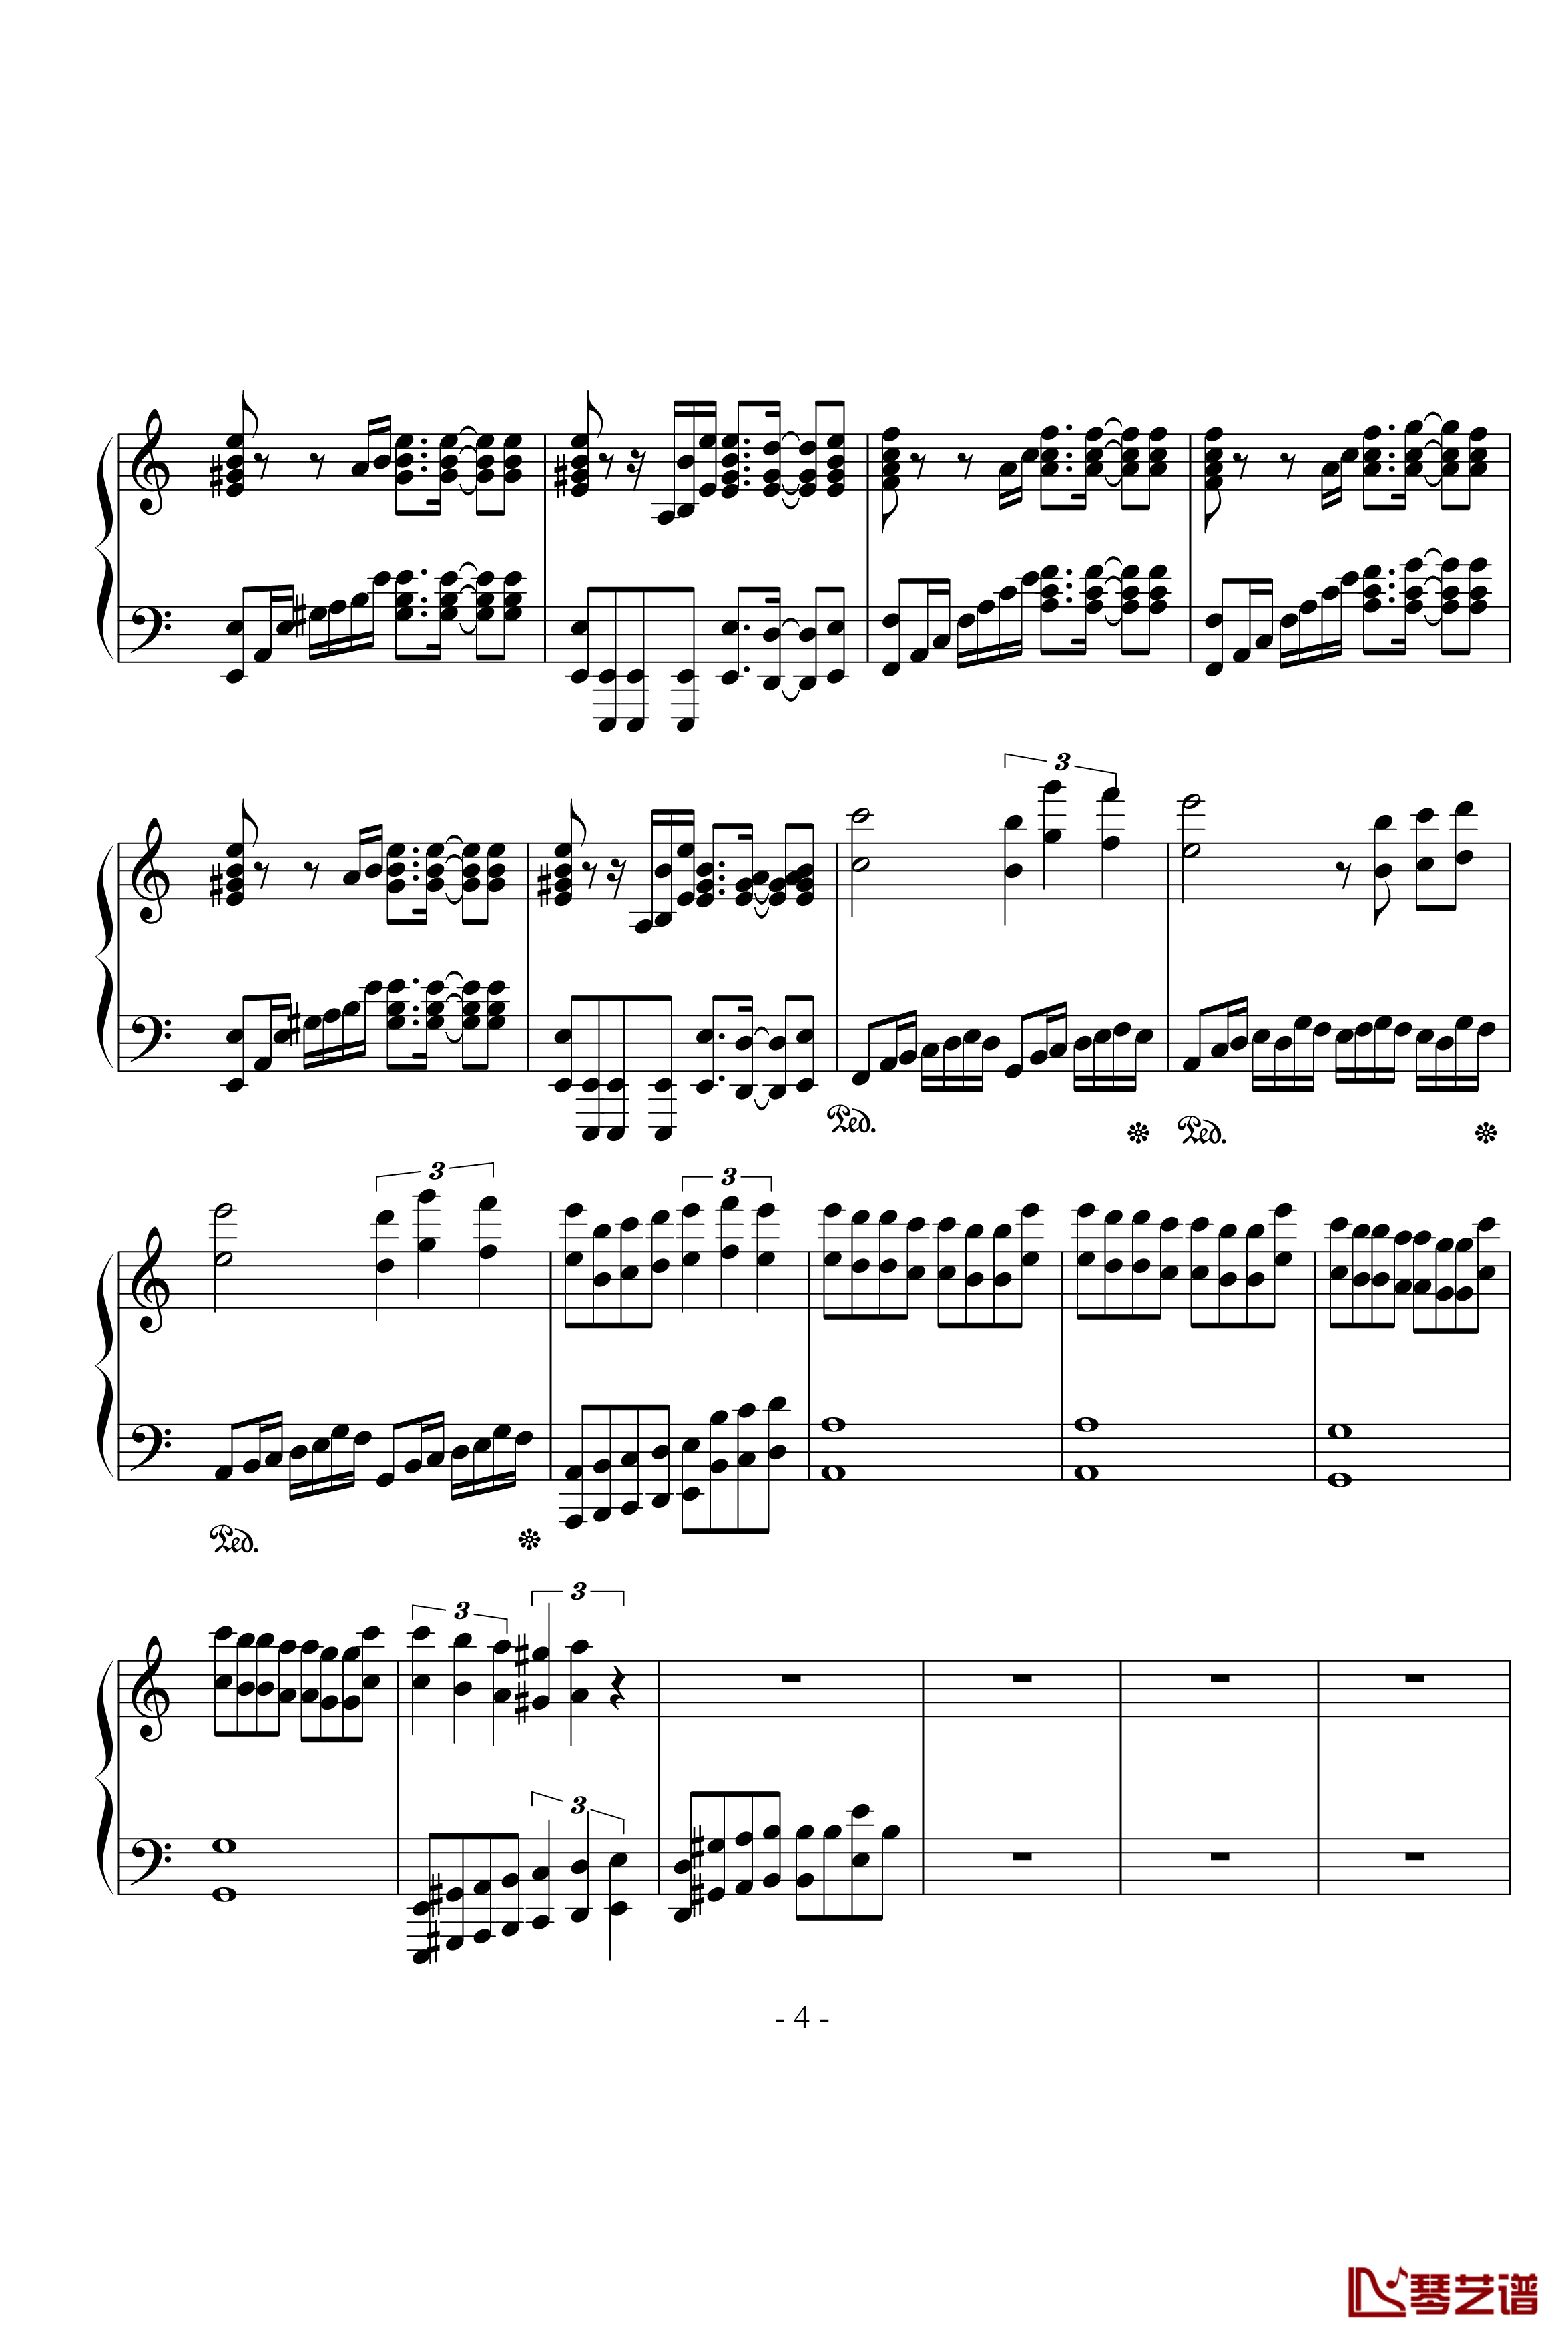 亡灵钢琴钢琴谱-不完整版本-影视